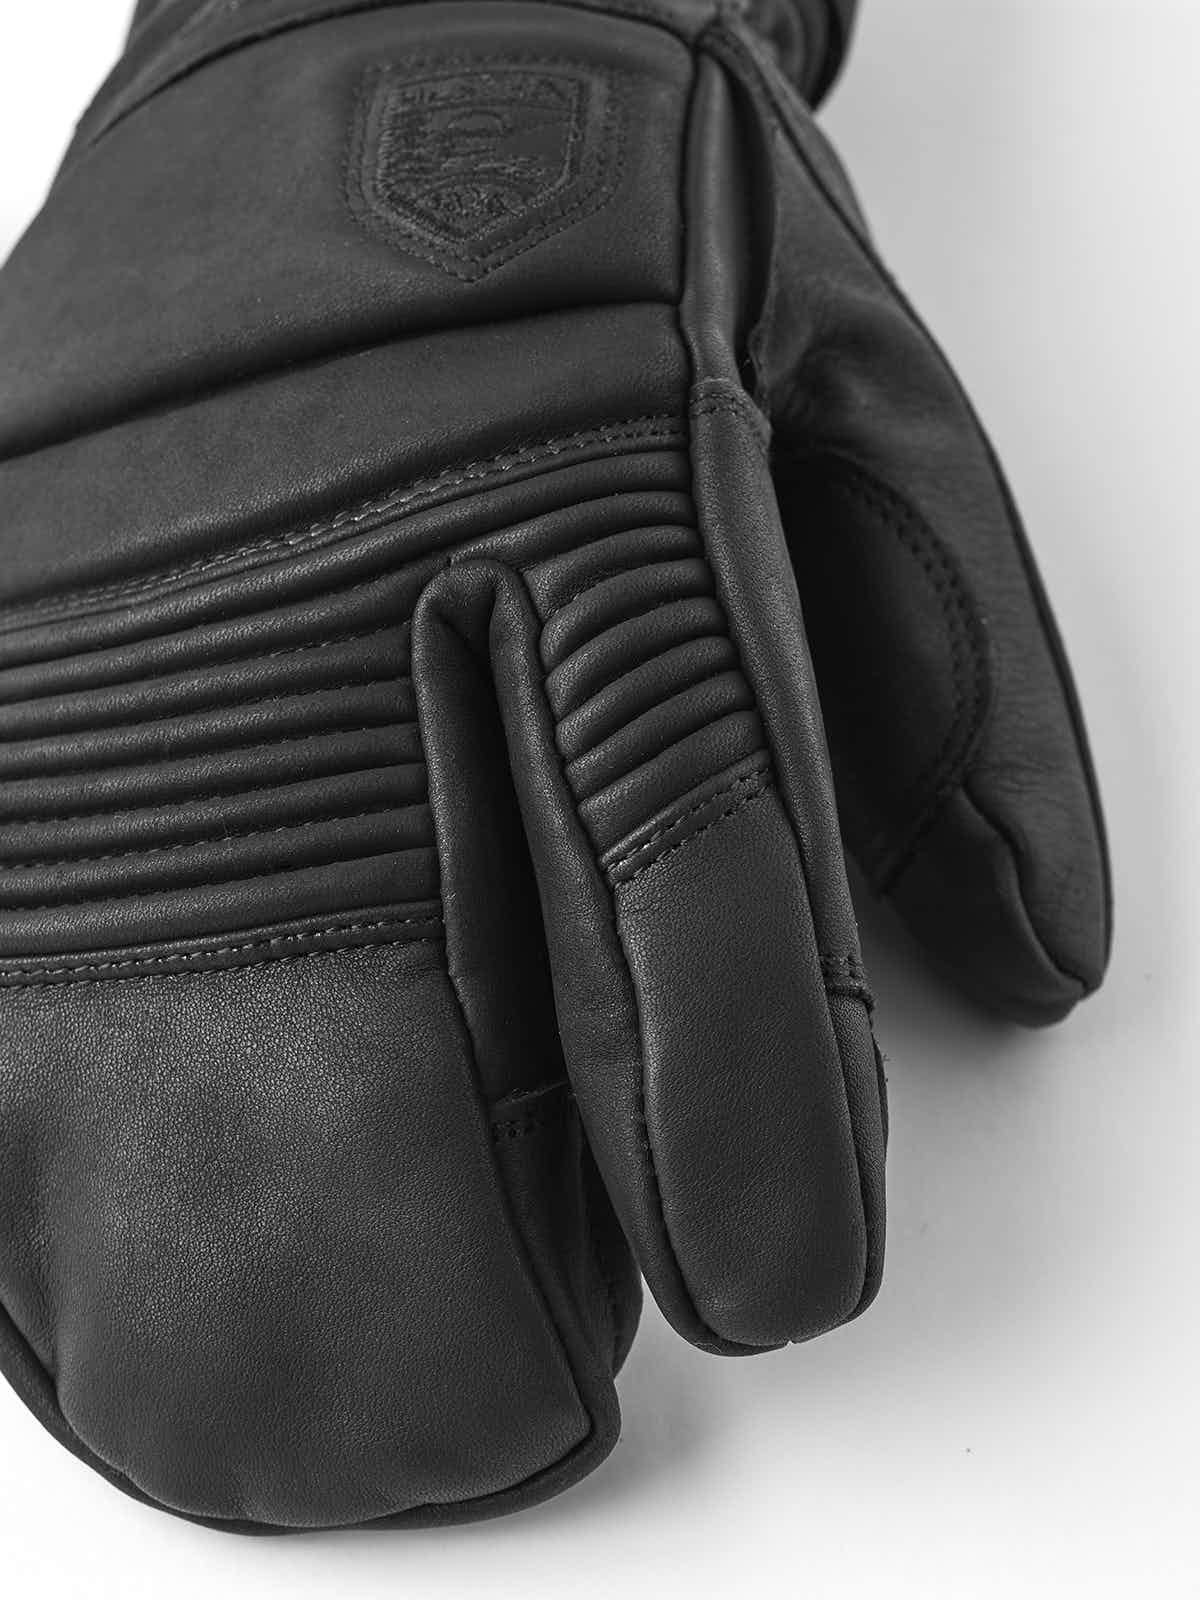 Leather Fall Line 3 Finger Glove Men's Black / 8